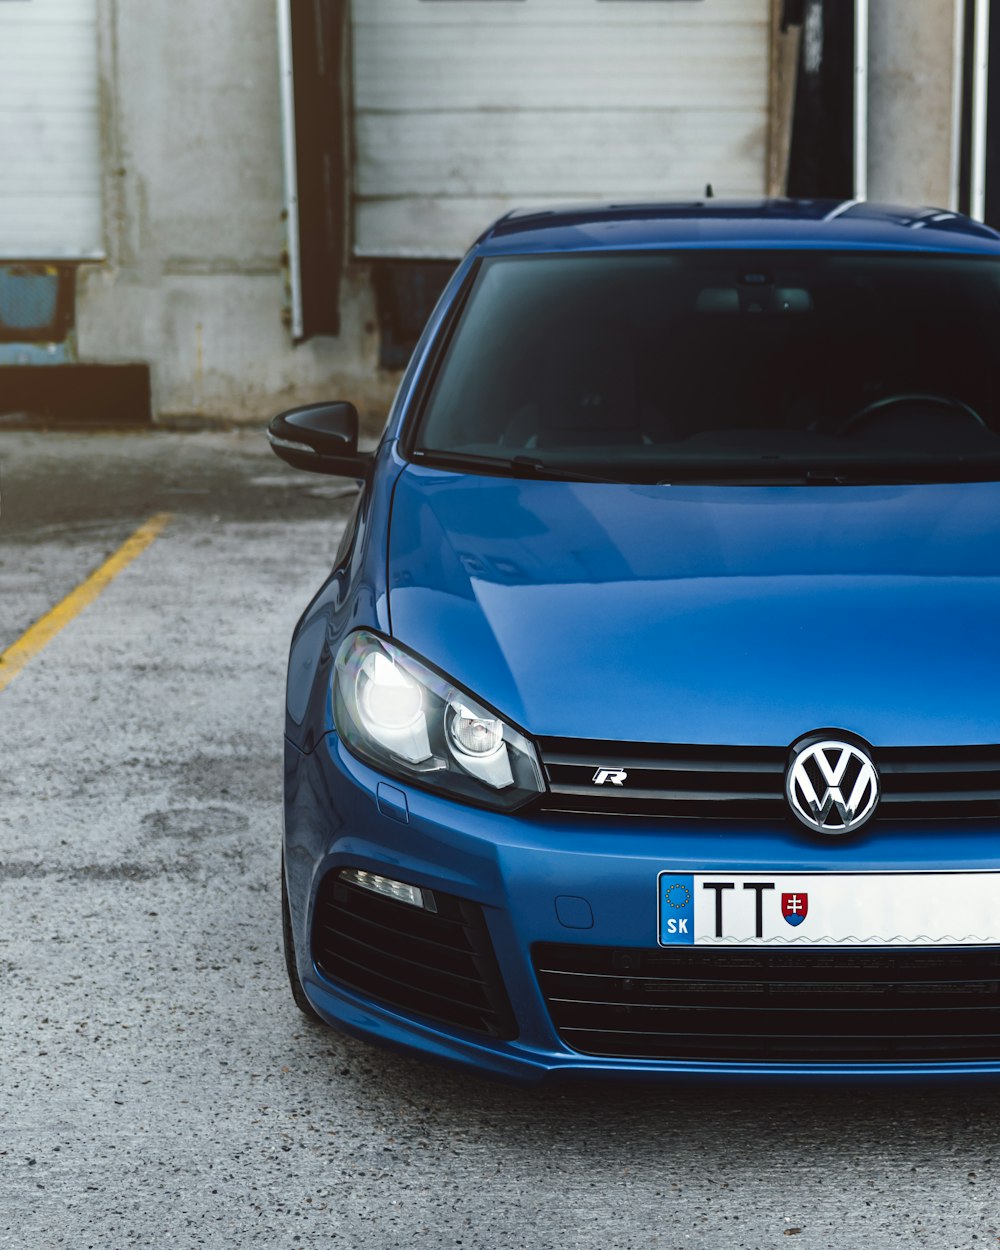 véhicule Volkswagen bleu